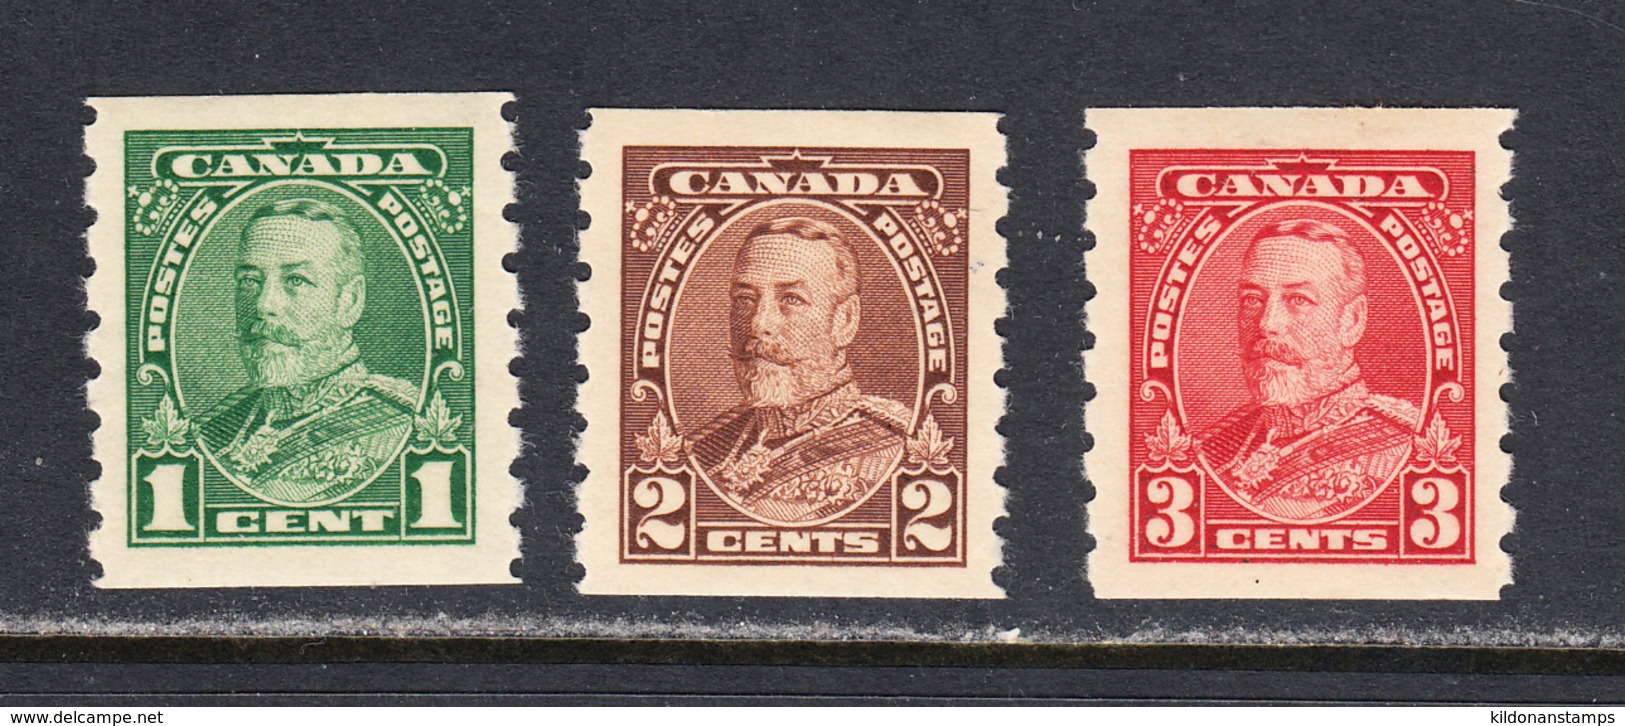 Canada 1935 Coils, Mint Mounted, See Notes, Sc# 228-230, SG 352-354 - Rollo De Sellos